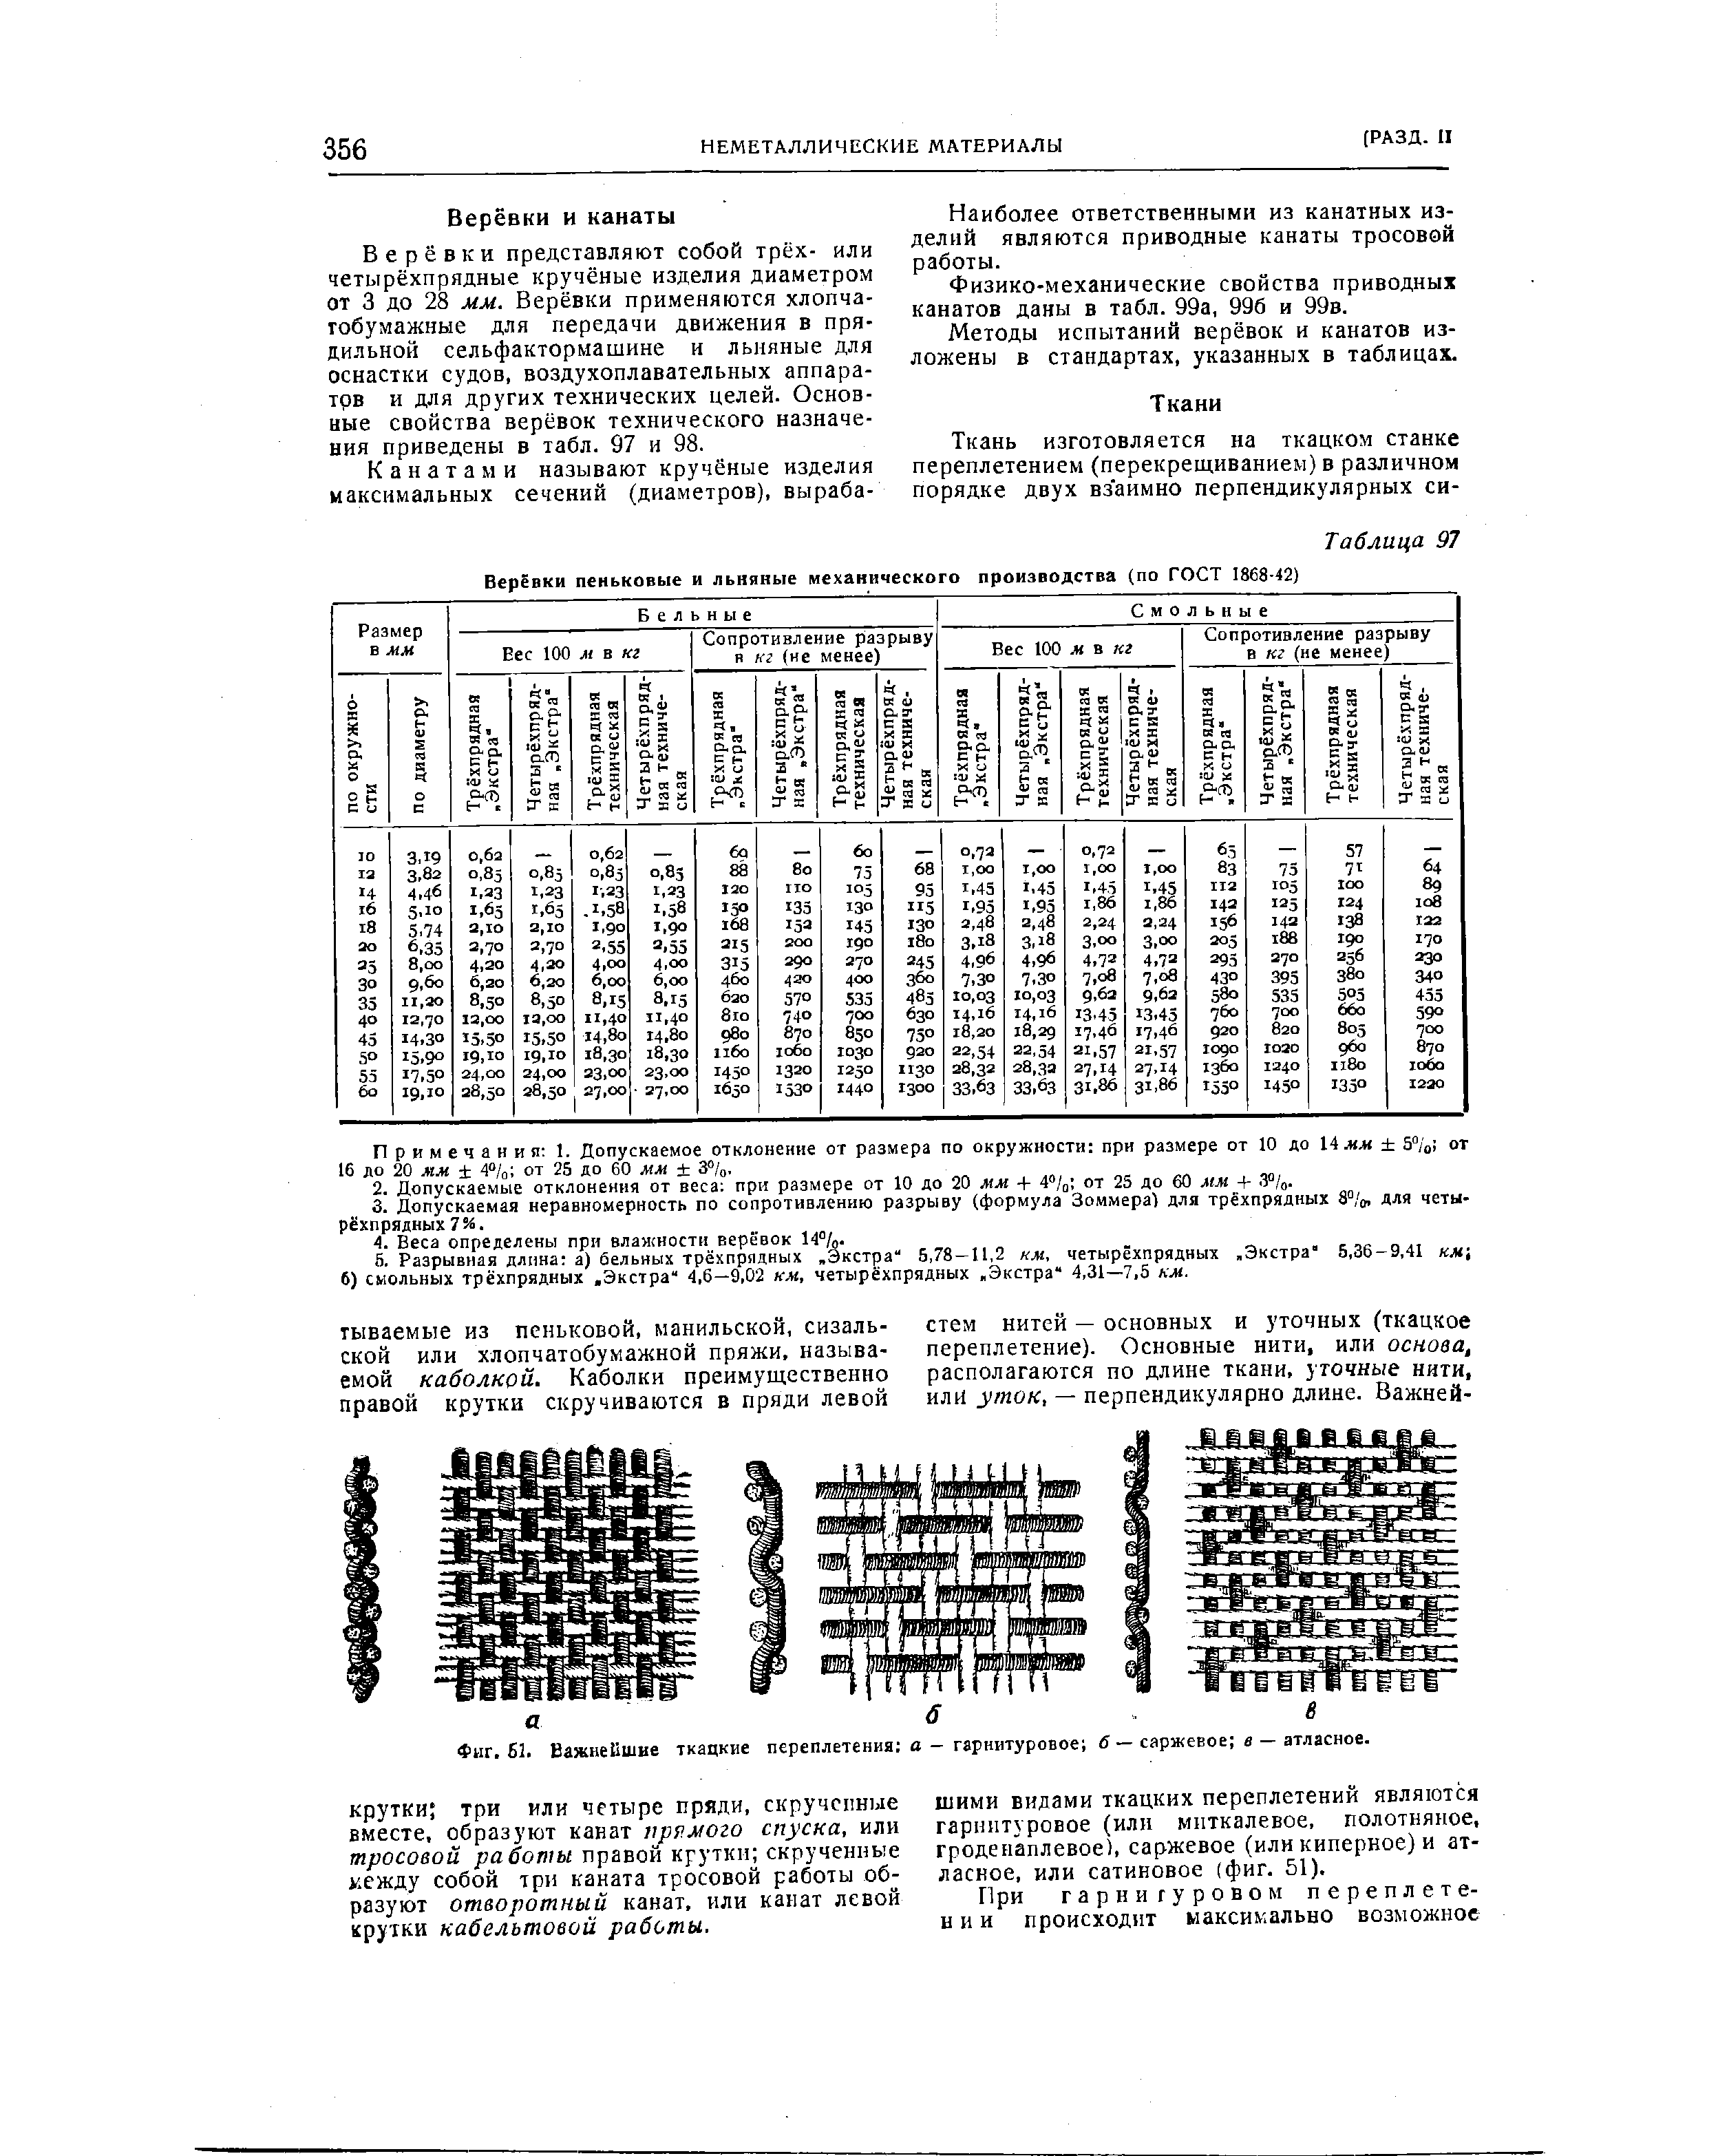 Фиг. 61. Важнейшие ткацкие переплетения о — гарнитуровое в — саржевое а — атласное.
